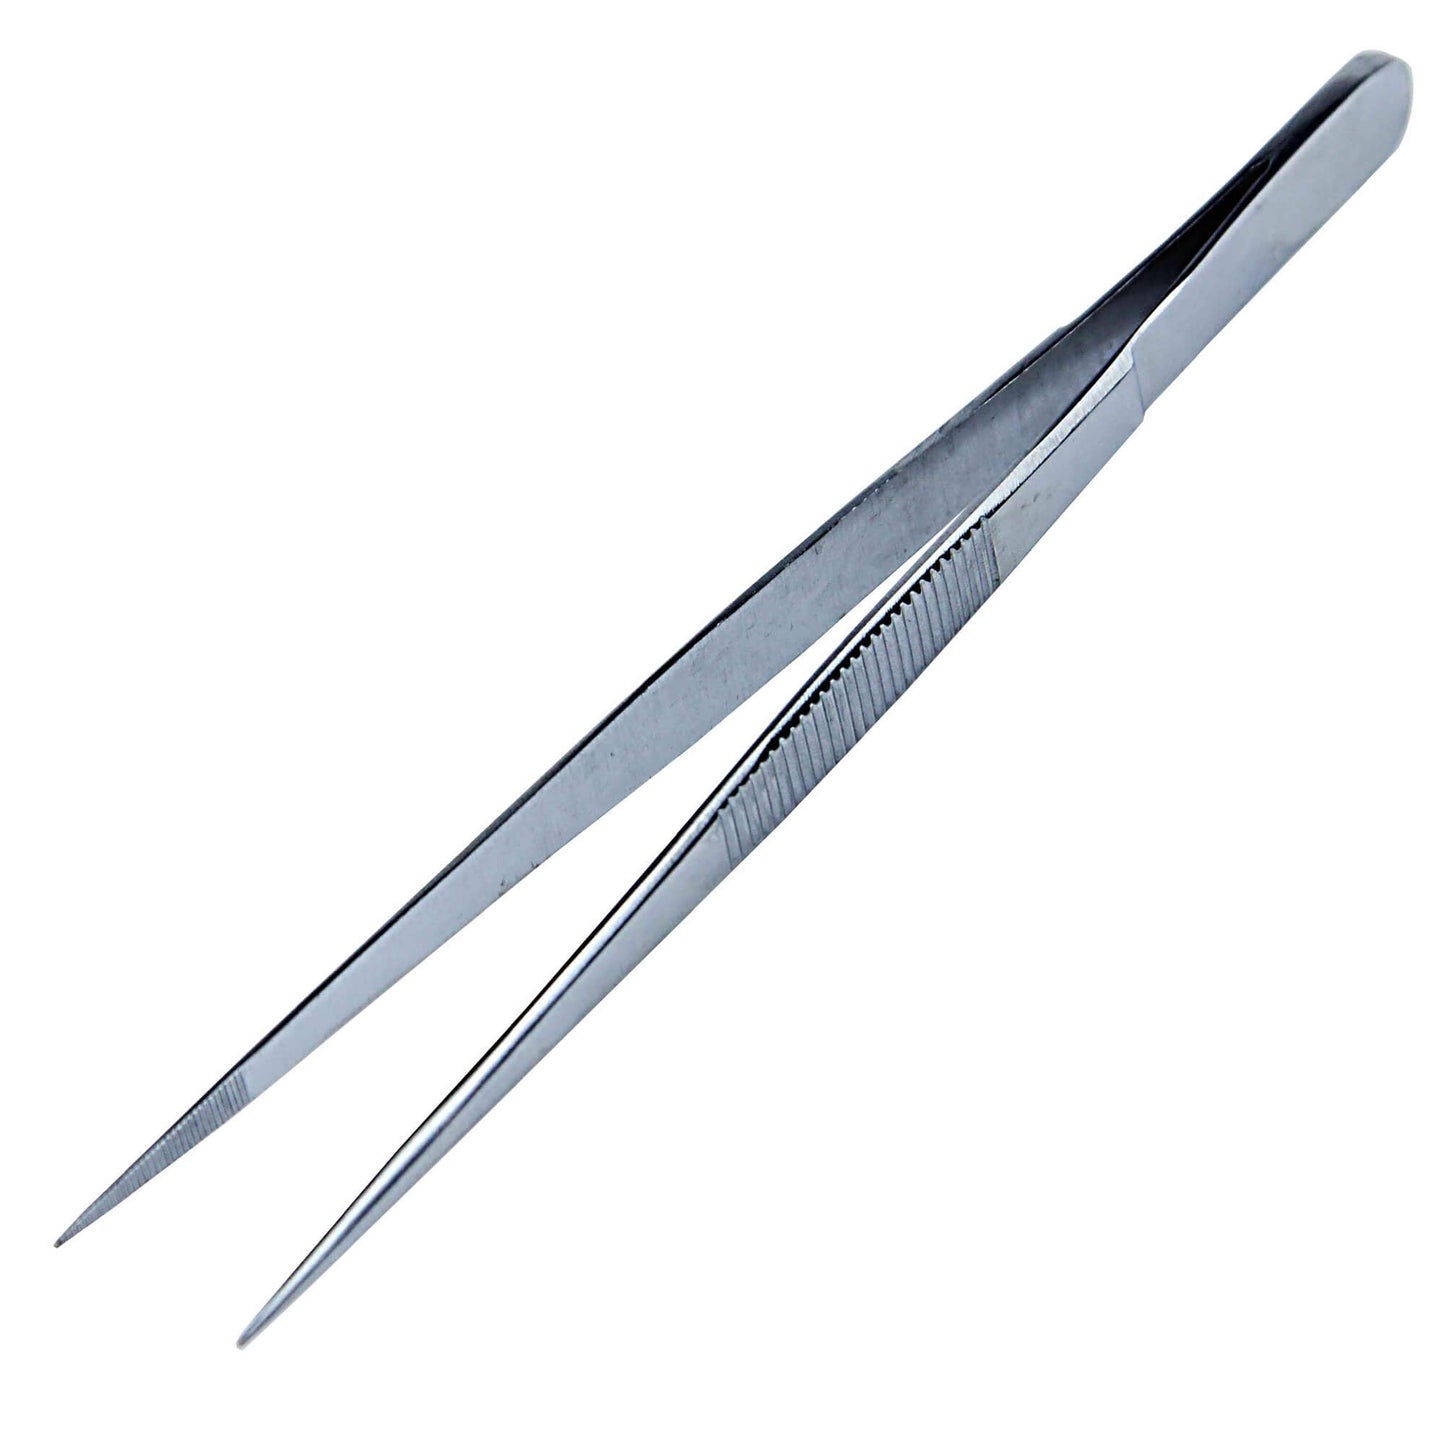 Tweezers 14 cm stainless steel - sharp tip